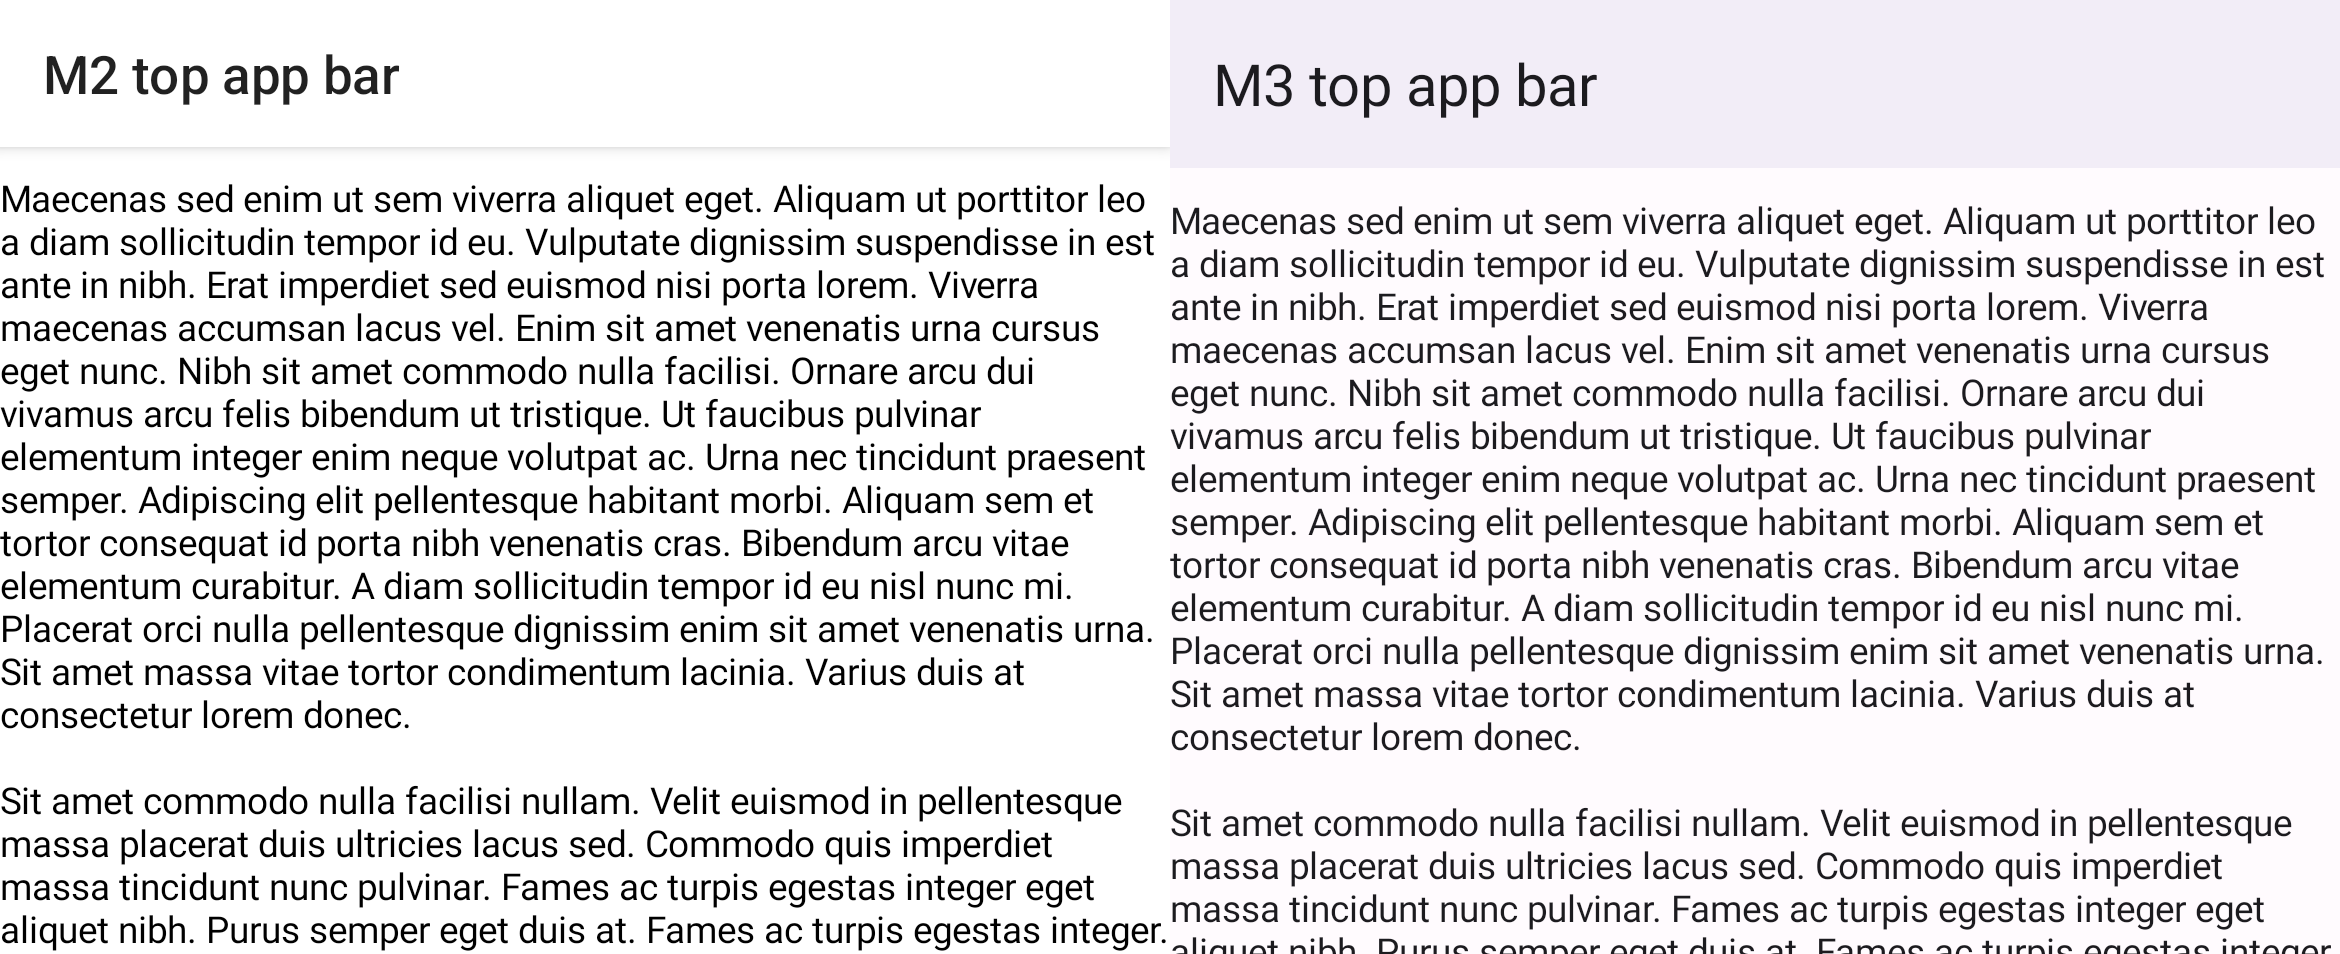 Confronto tra impalcatura M2 e M3 con barra dell’app superiore e elenco scorrevole